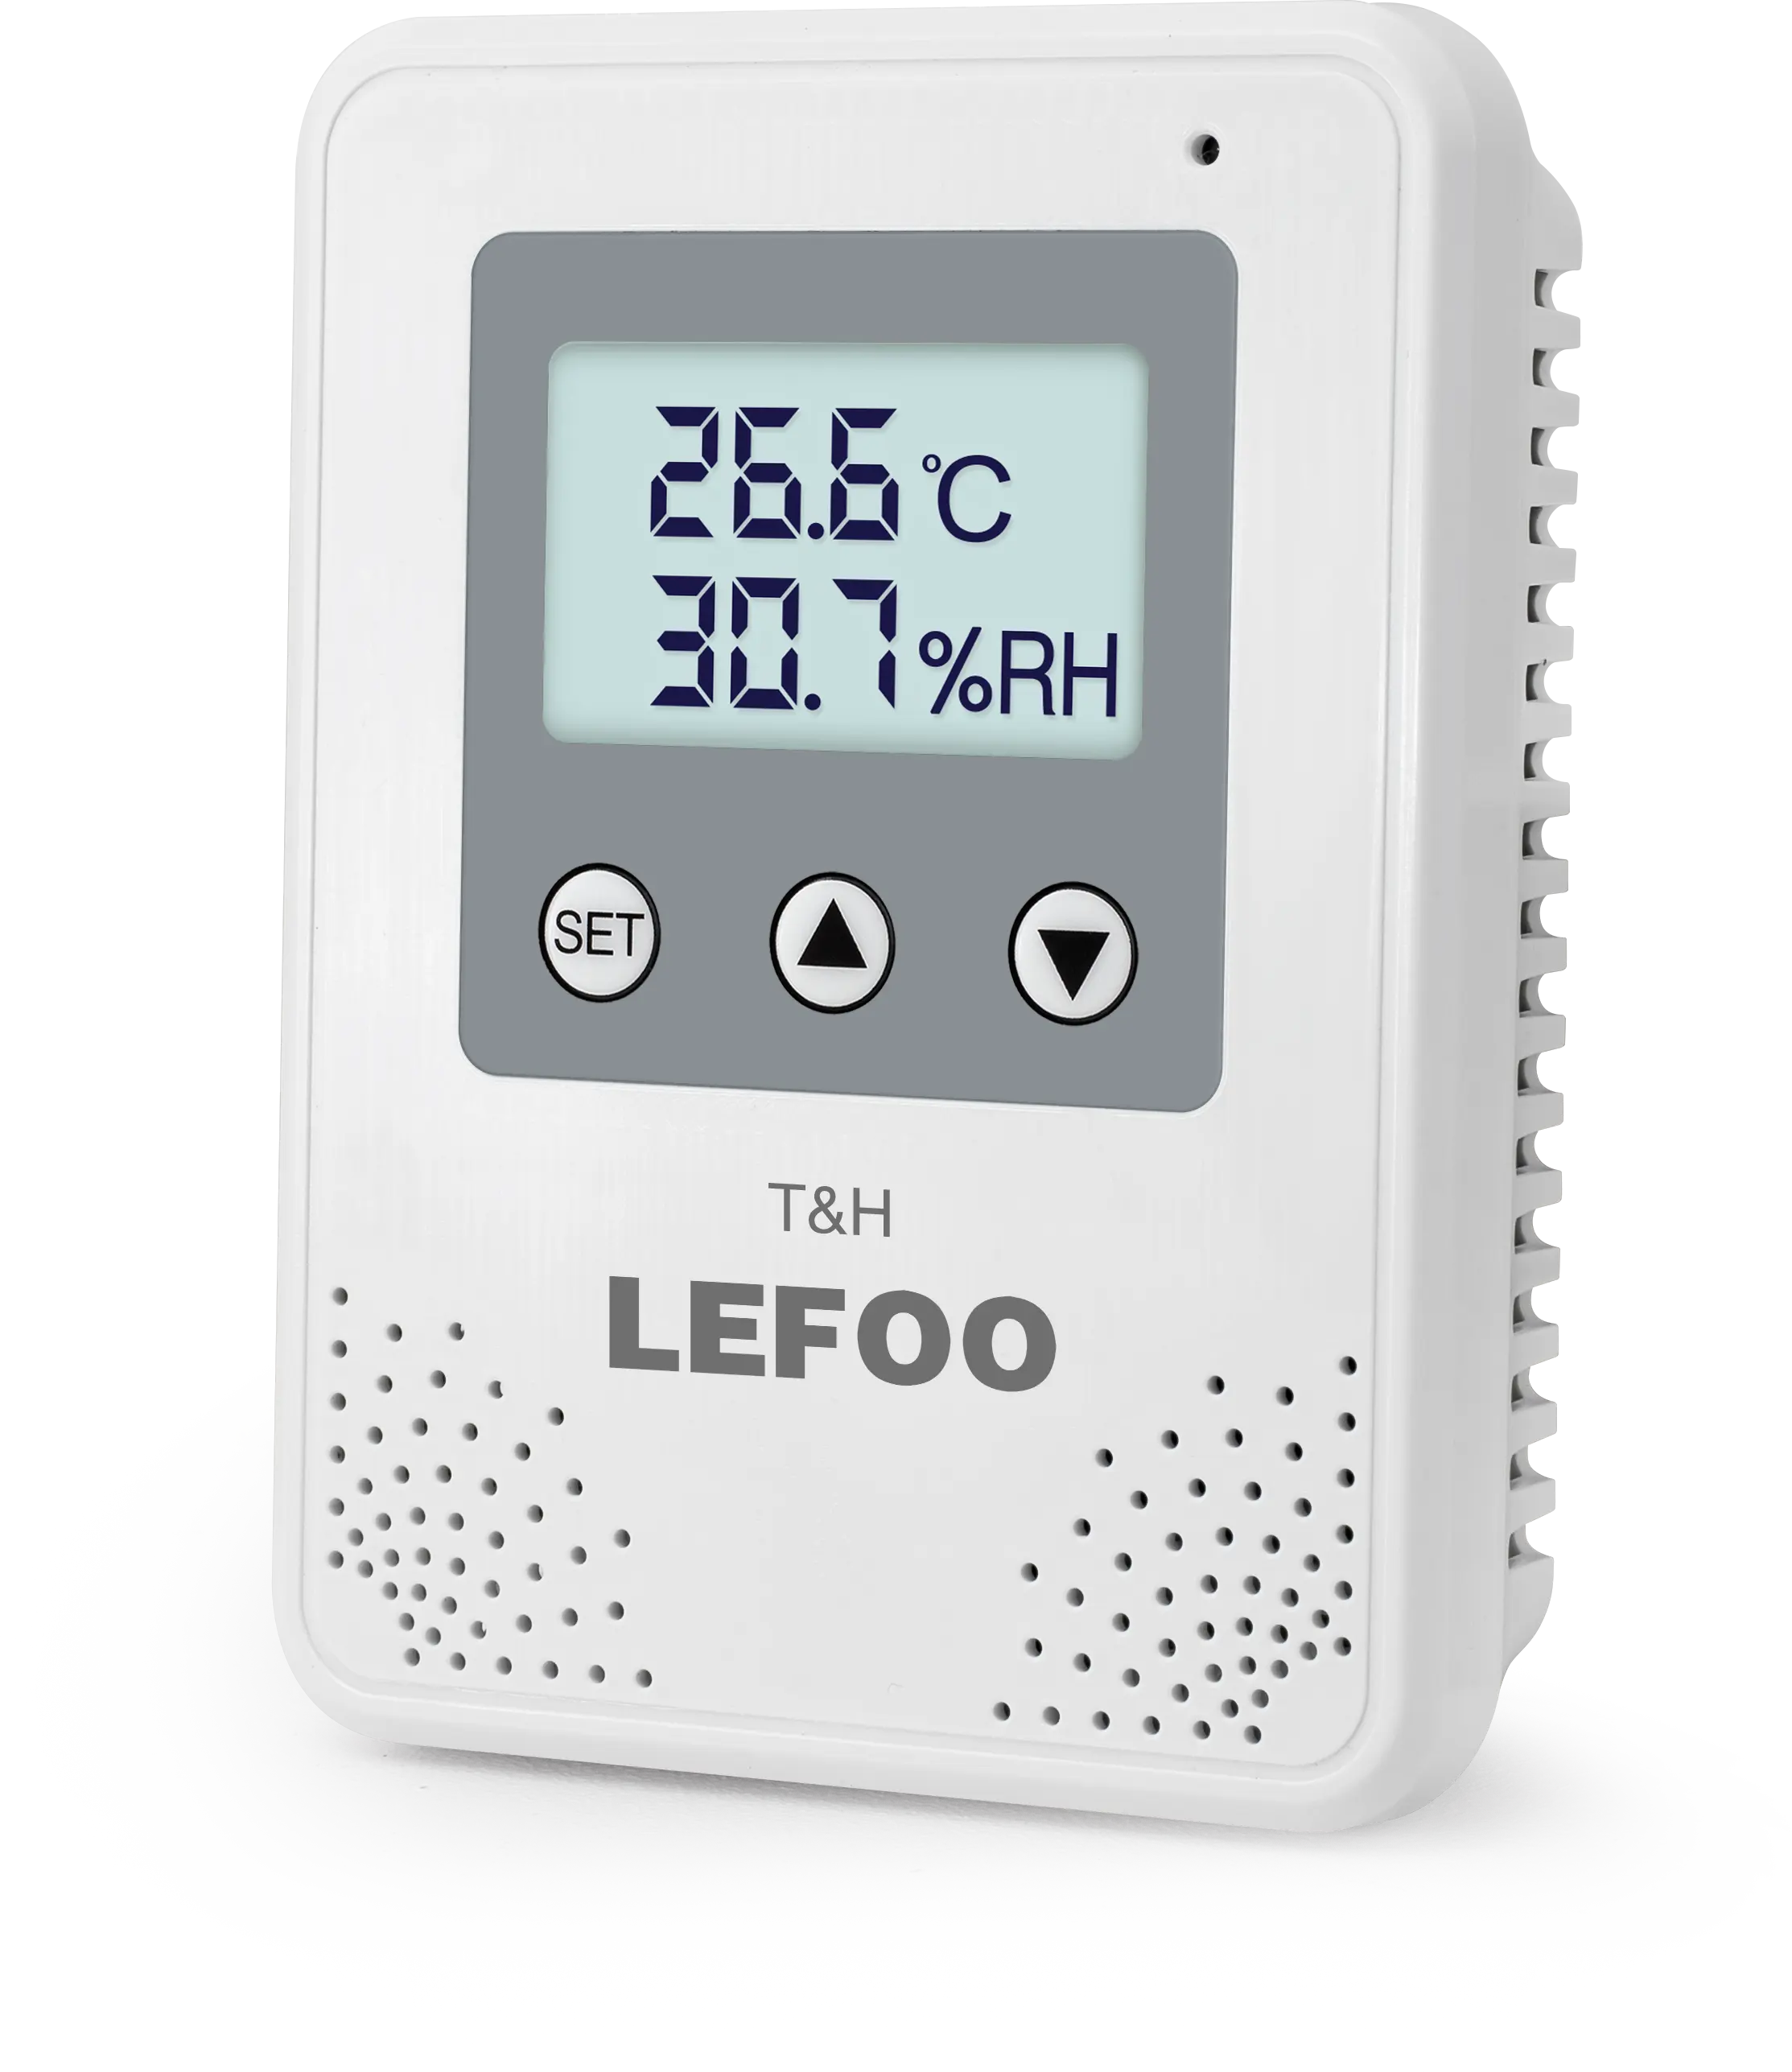 LEFOO CE ROHS認定LCDディスプレイ温度湿度コントローラートランスミッターセンサー、リレーおよびアラーム機能付き